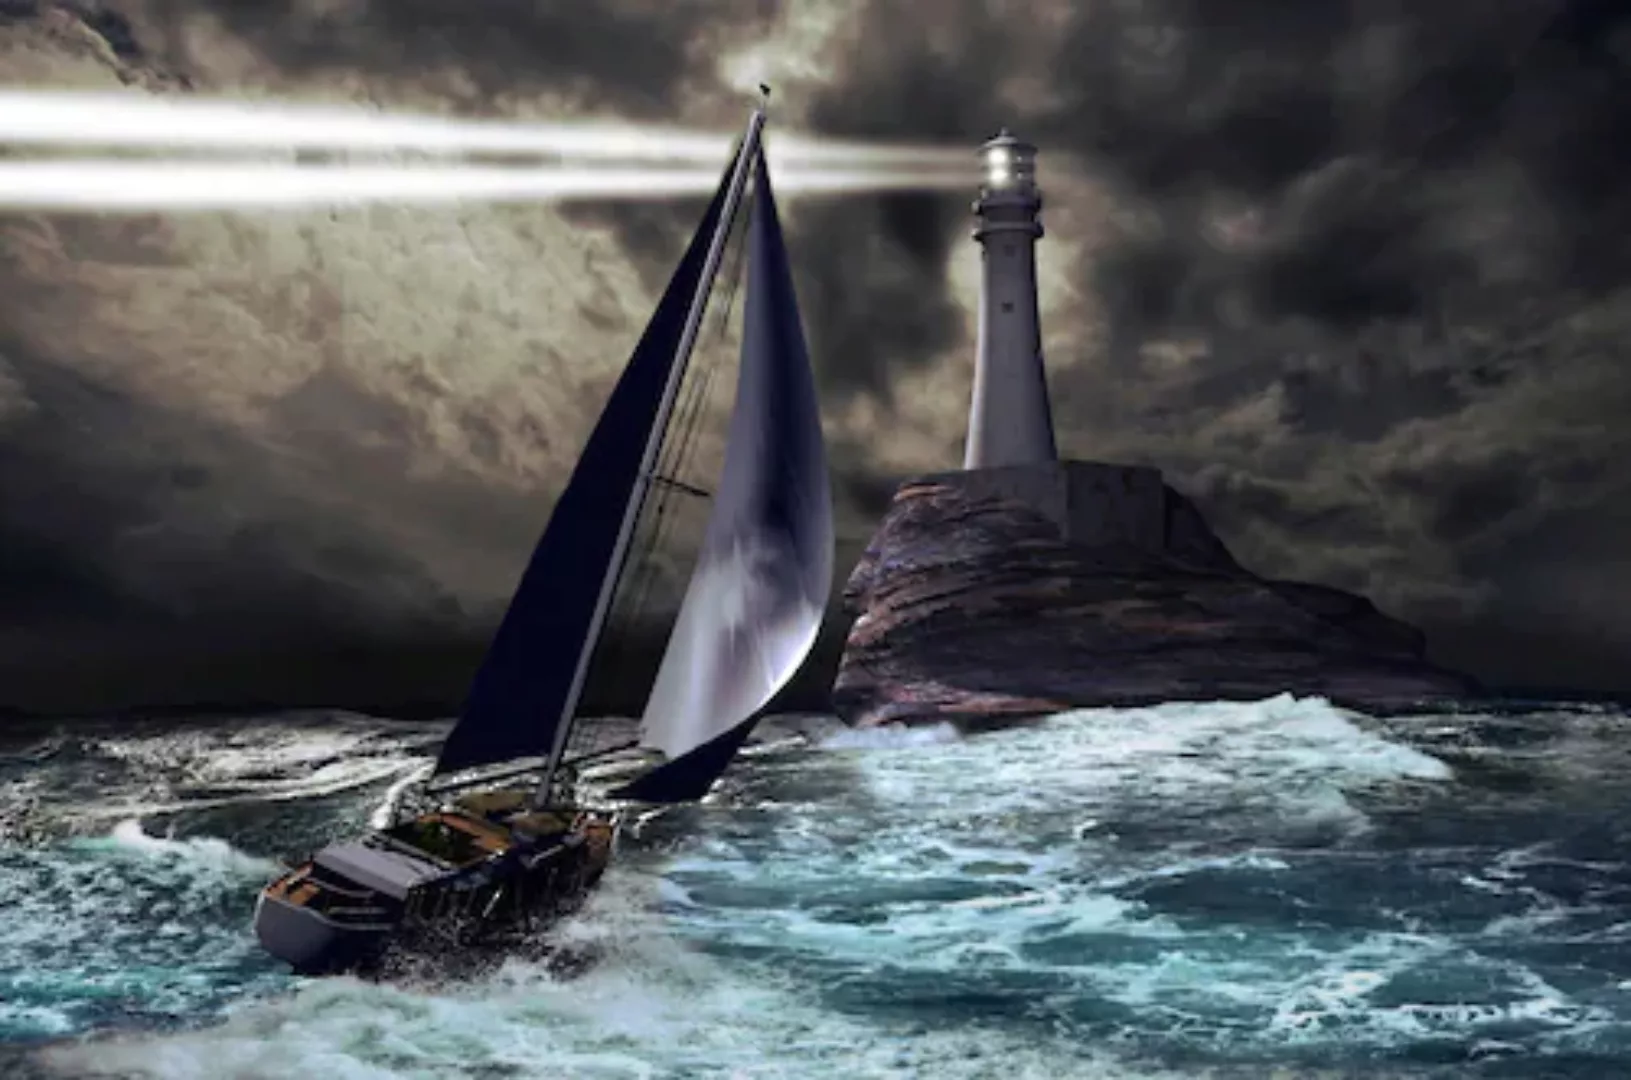 Papermoon Fototapete »Schiff mit Leuchtturm« günstig online kaufen